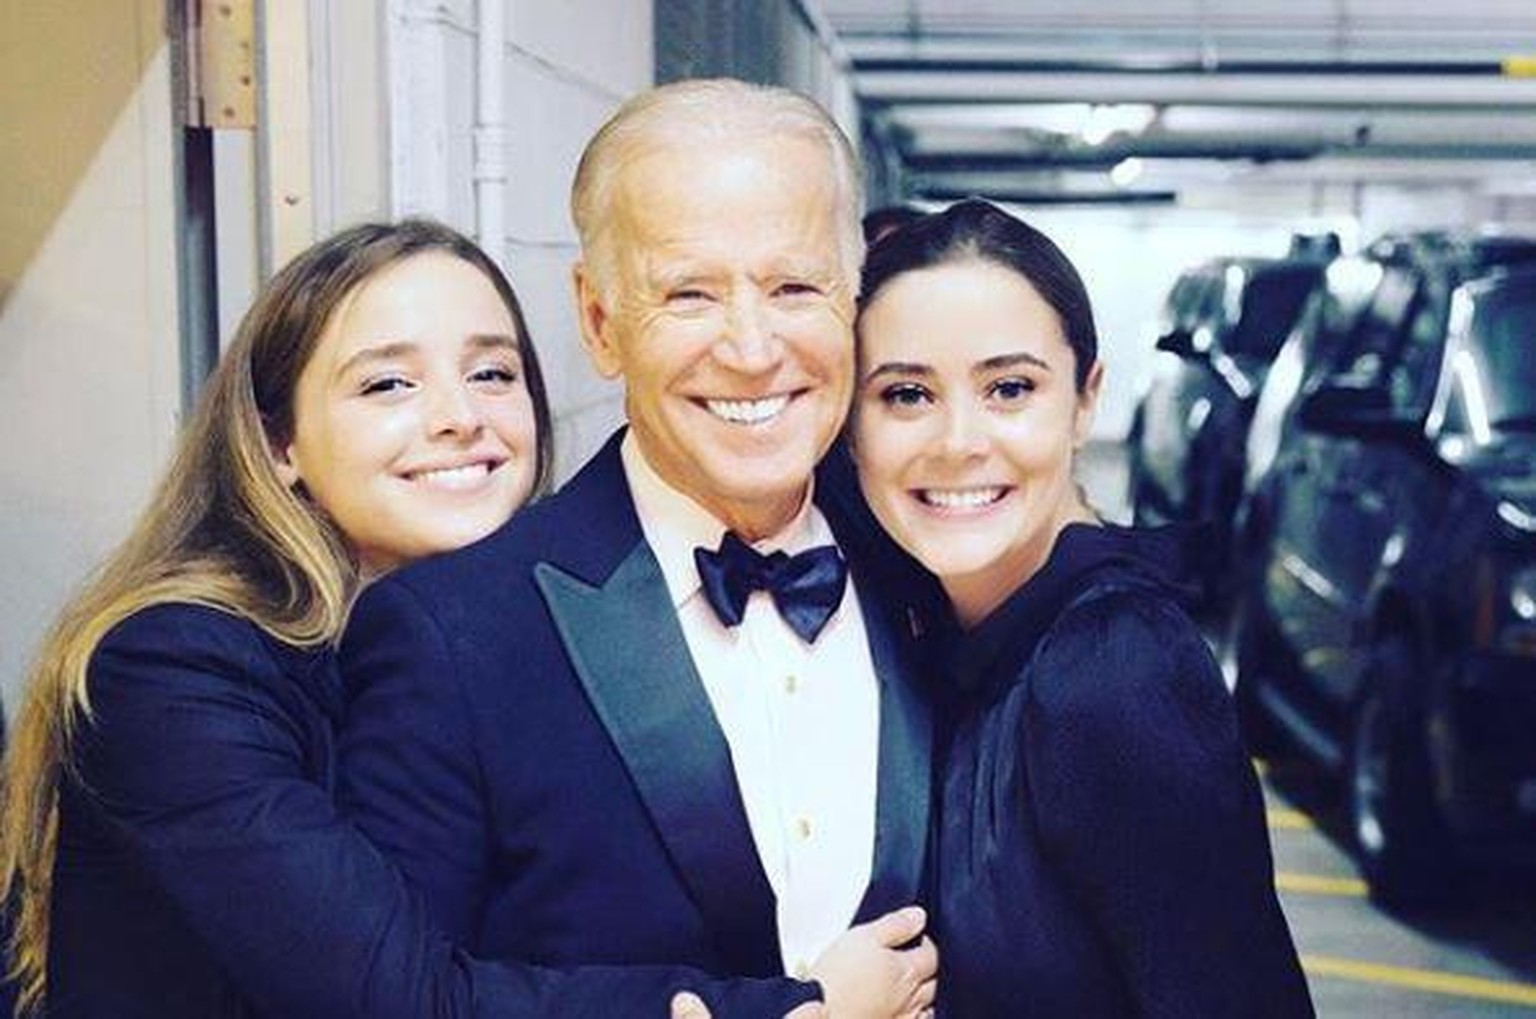 Präsidentschaftskandidat Joe Biden mit seinen Enkelinnen Finnegan (l.) und Naomi (r.).